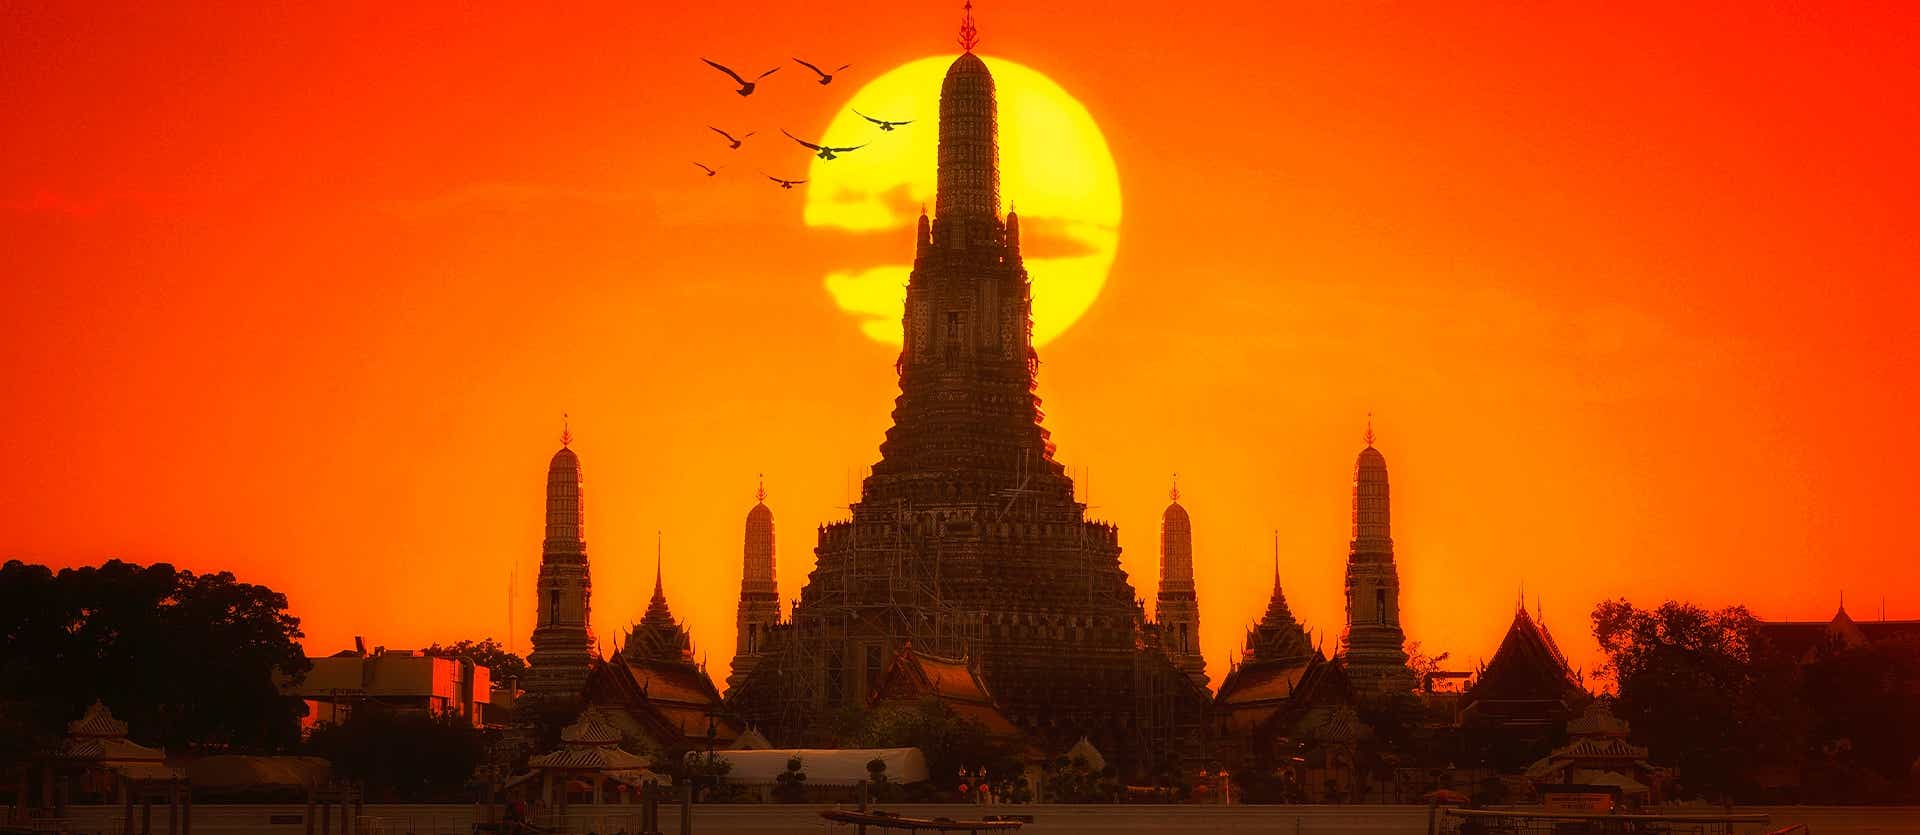 Wat Arun Temple <span class="iconos separador"></span> Bangkok 